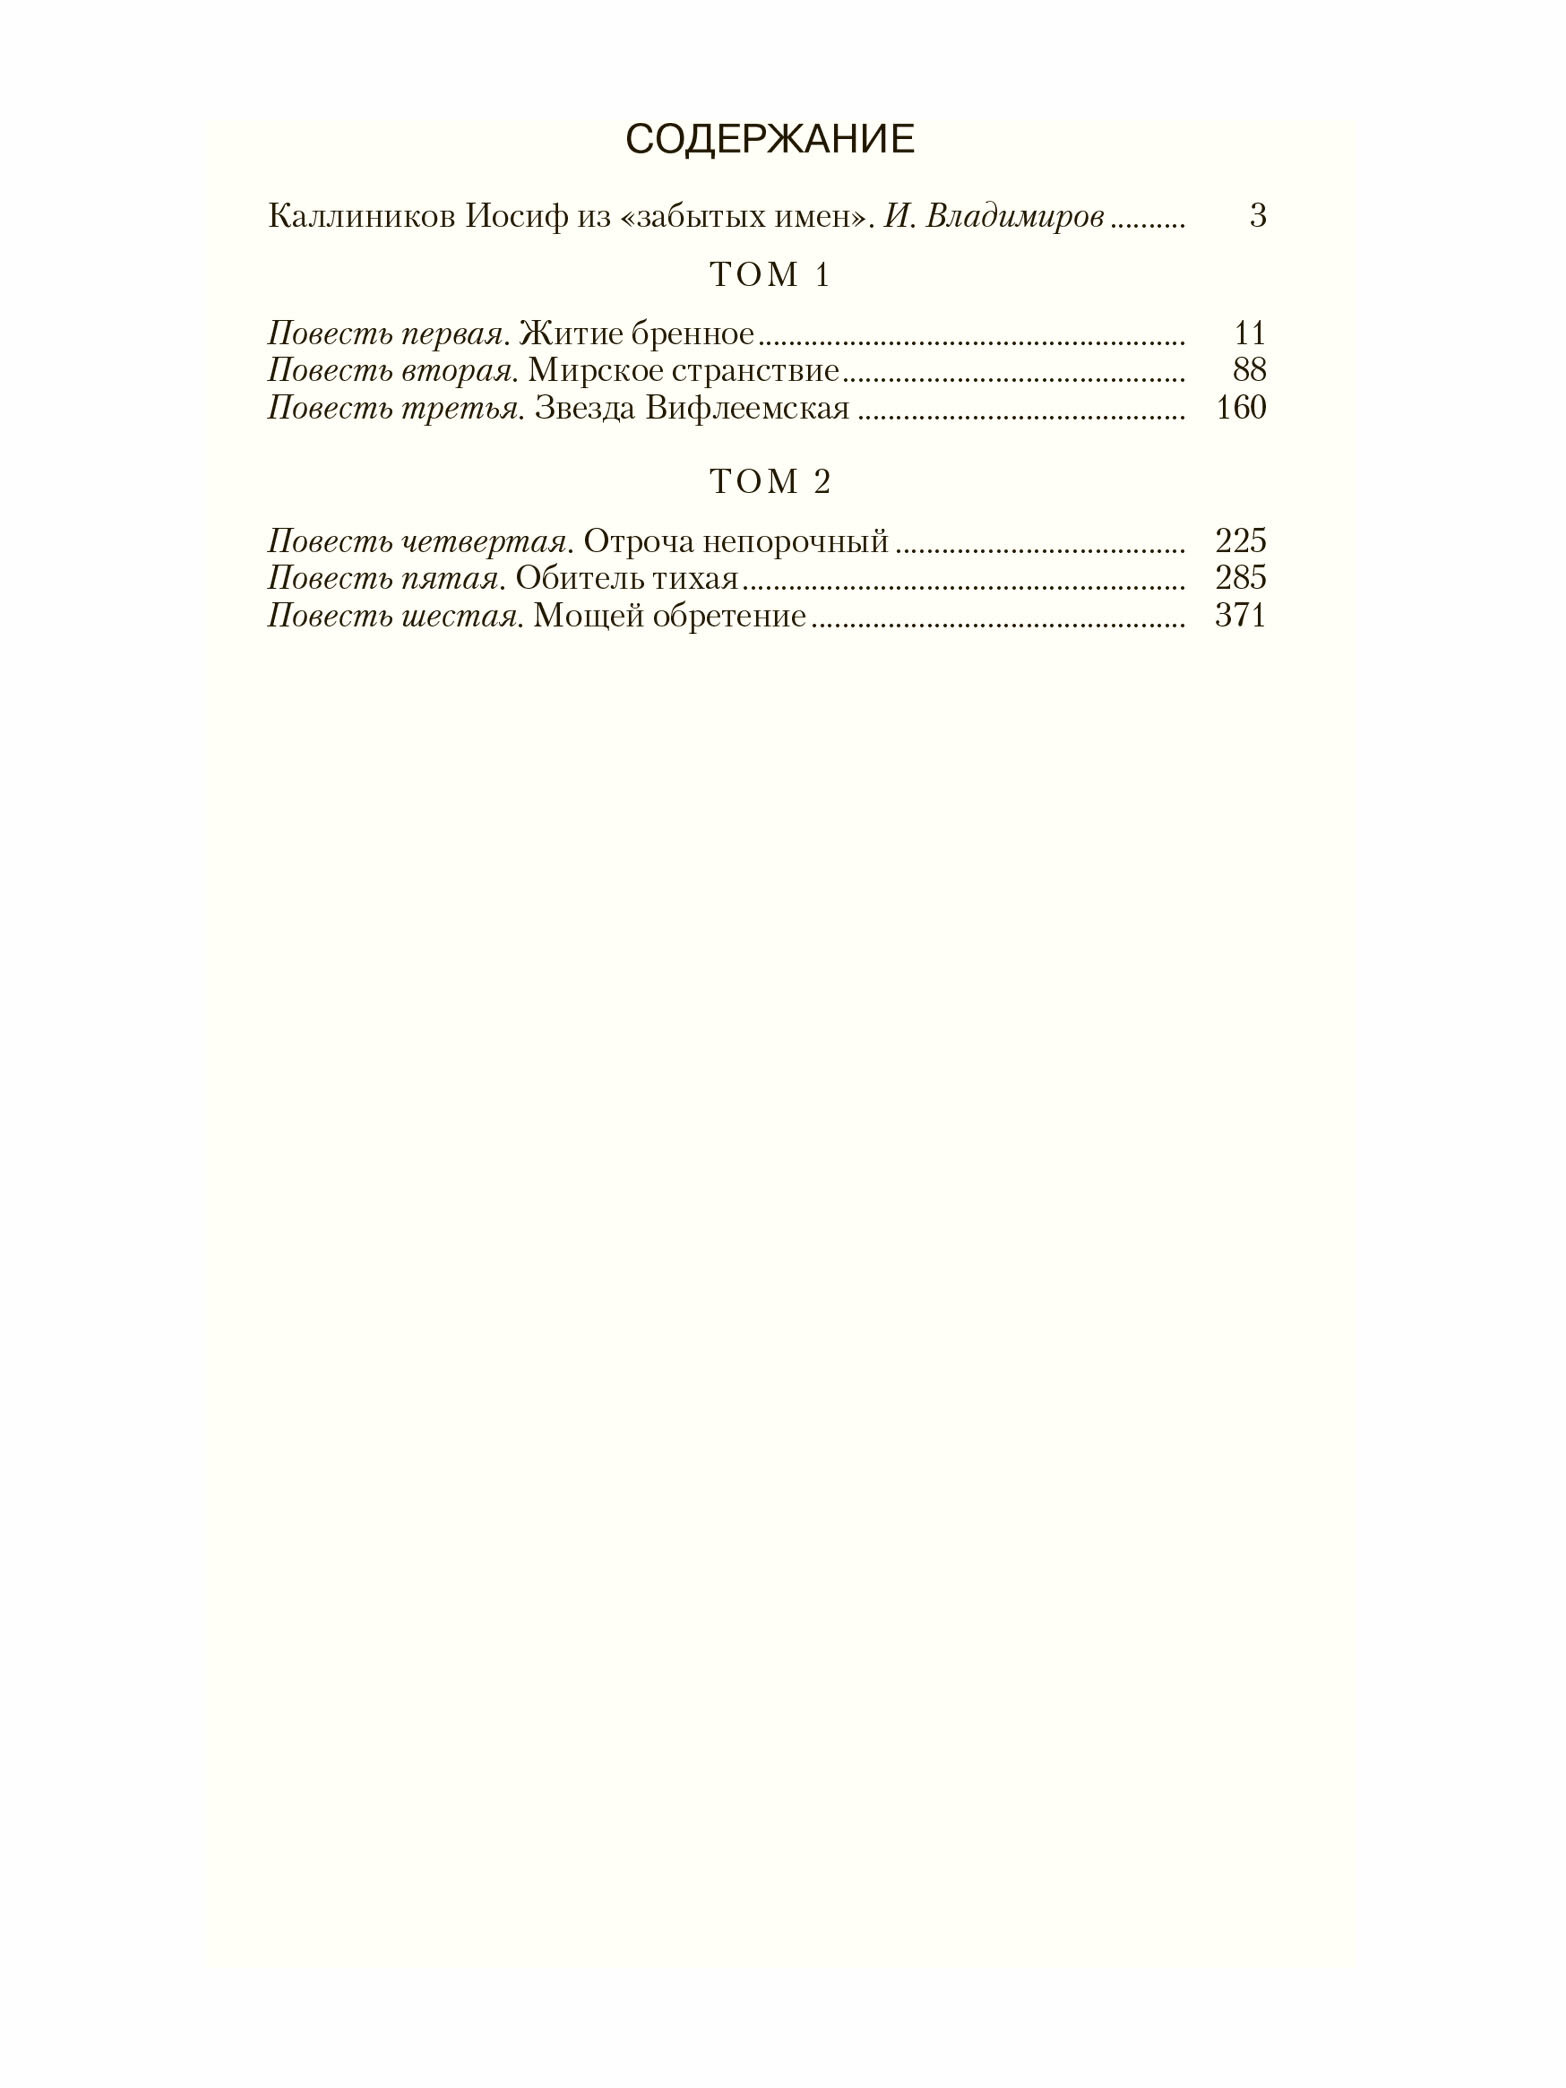 Каллиников И. Ф. мощи: 4 тома в 2-х книгах